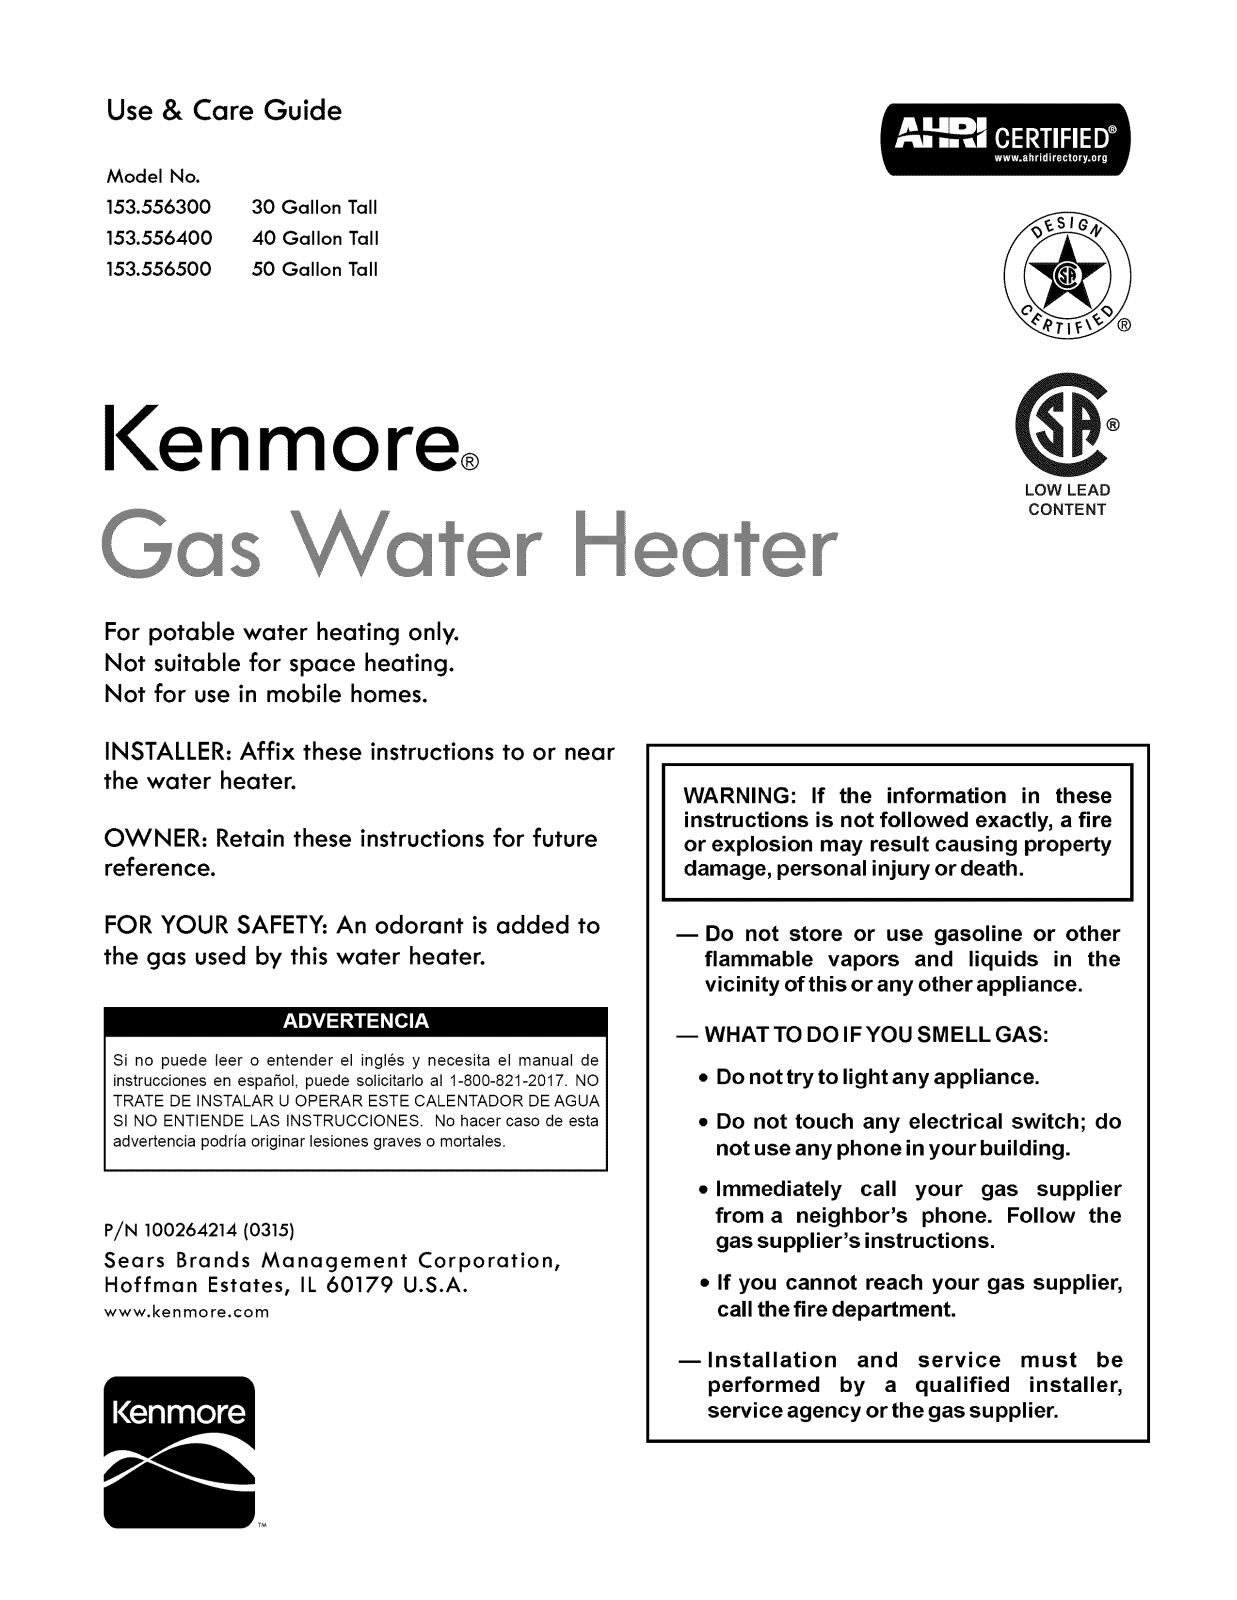 Kenmore 153556500, 153556400, 153556300 Owner’s Manual